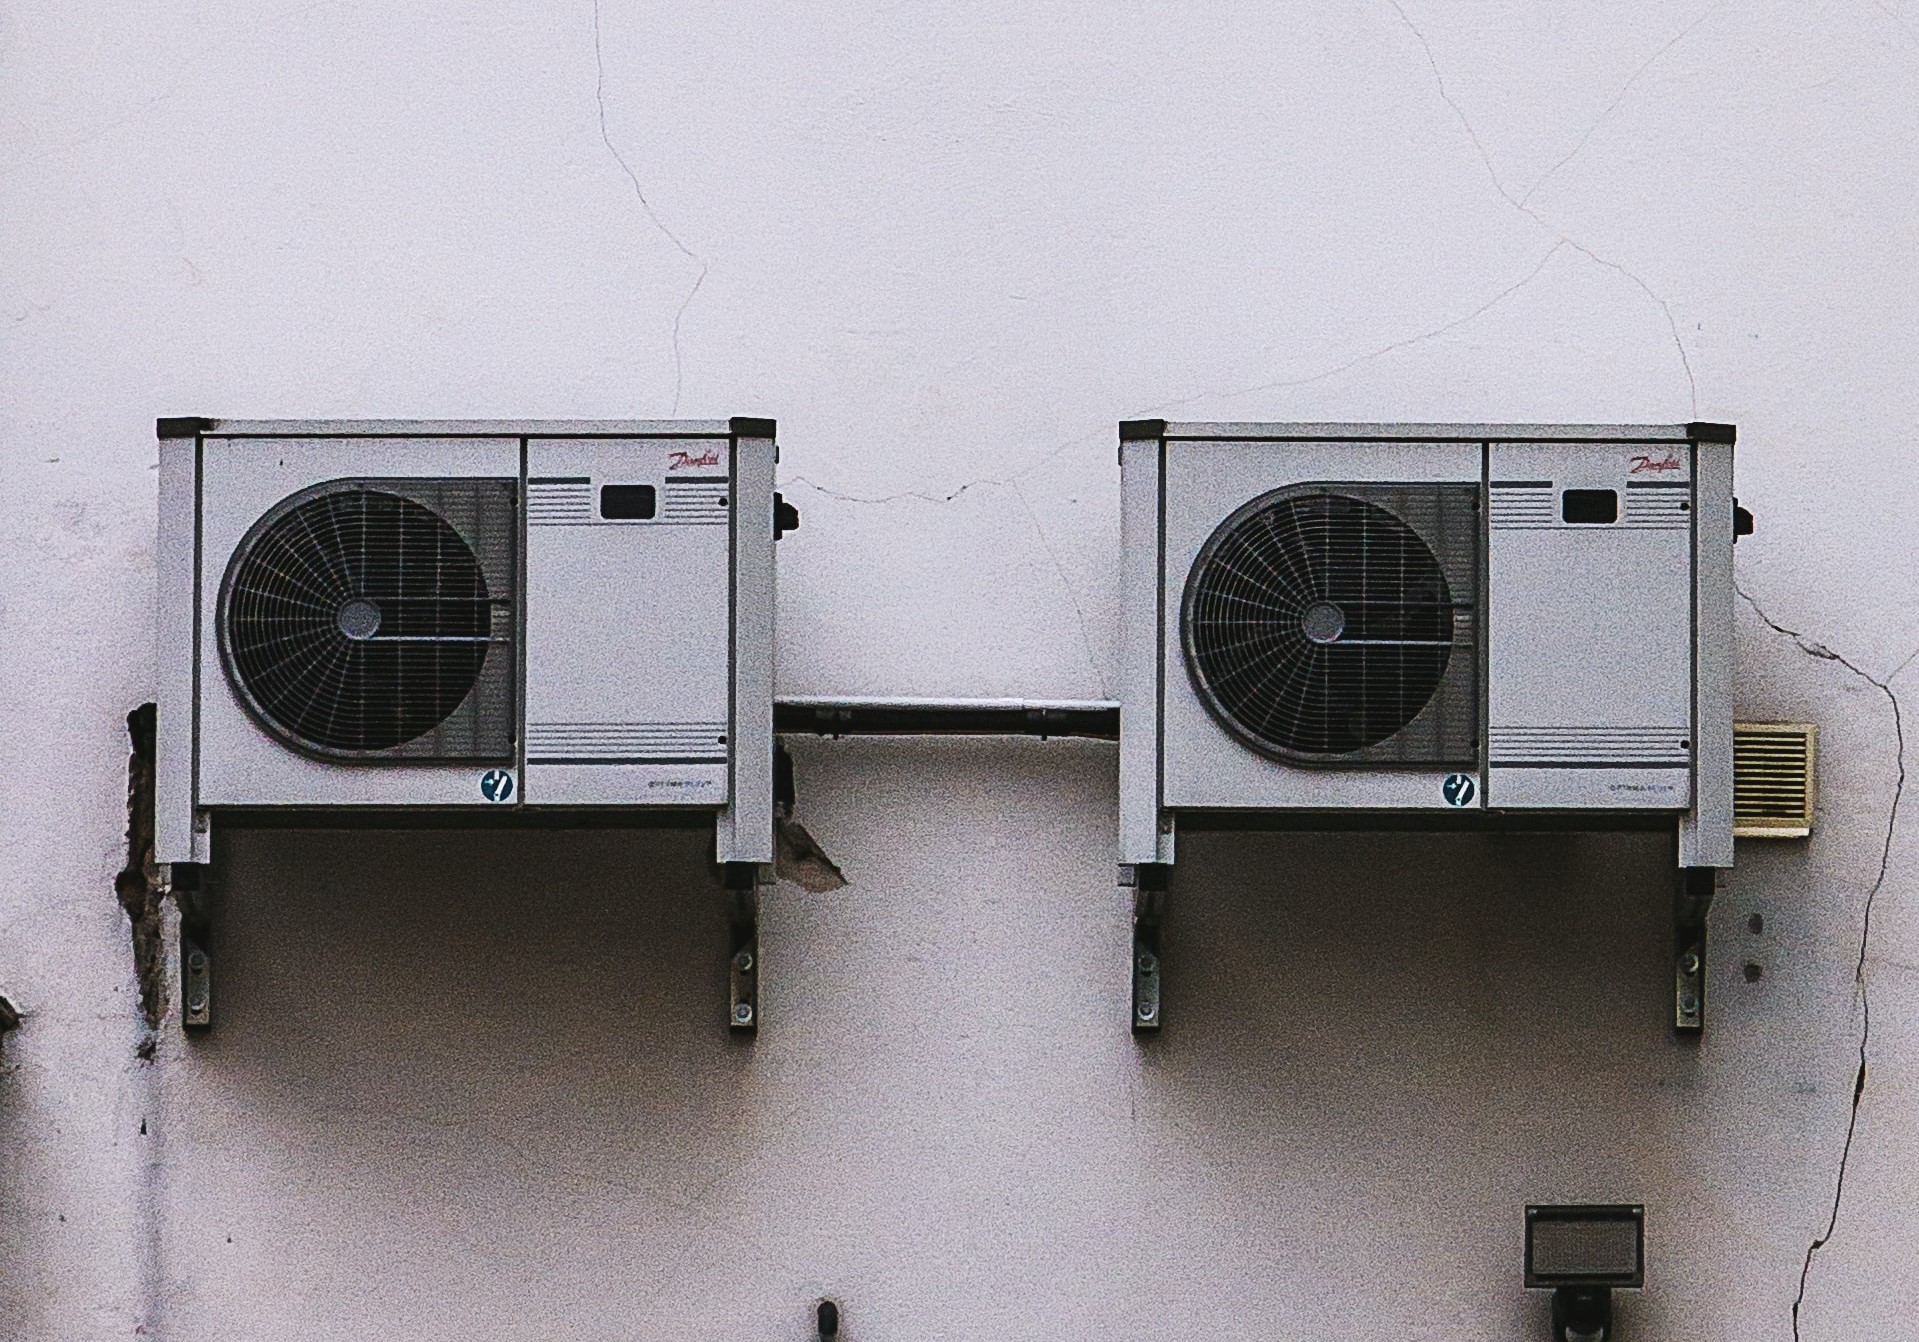 La Diputación de Córdoba busca garantizar el confort con licitación de mantenimiento de aire acondicionado